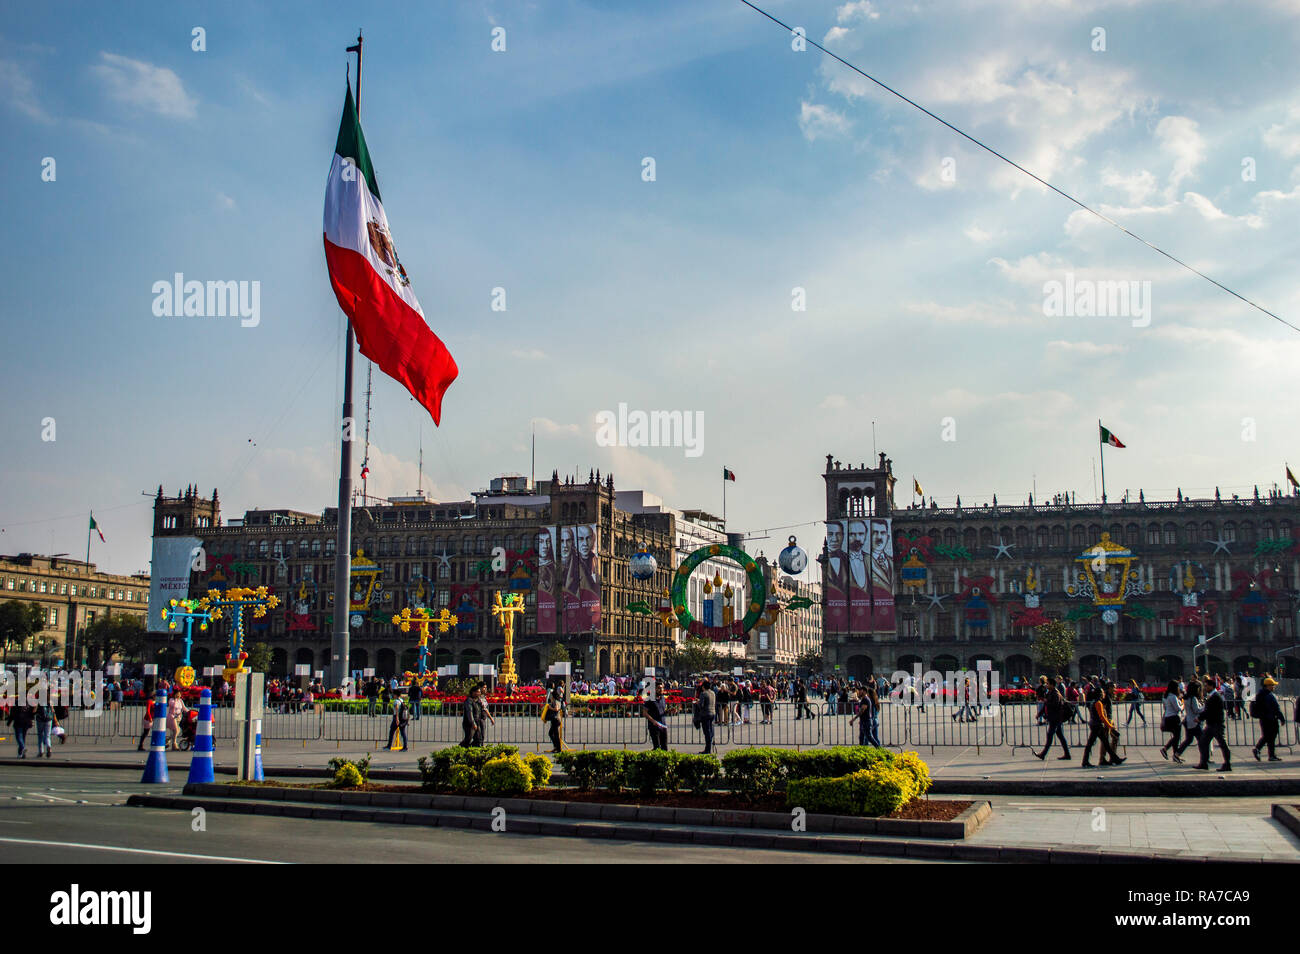 The Zocalo in Mexico City, Mexico Stock Photo